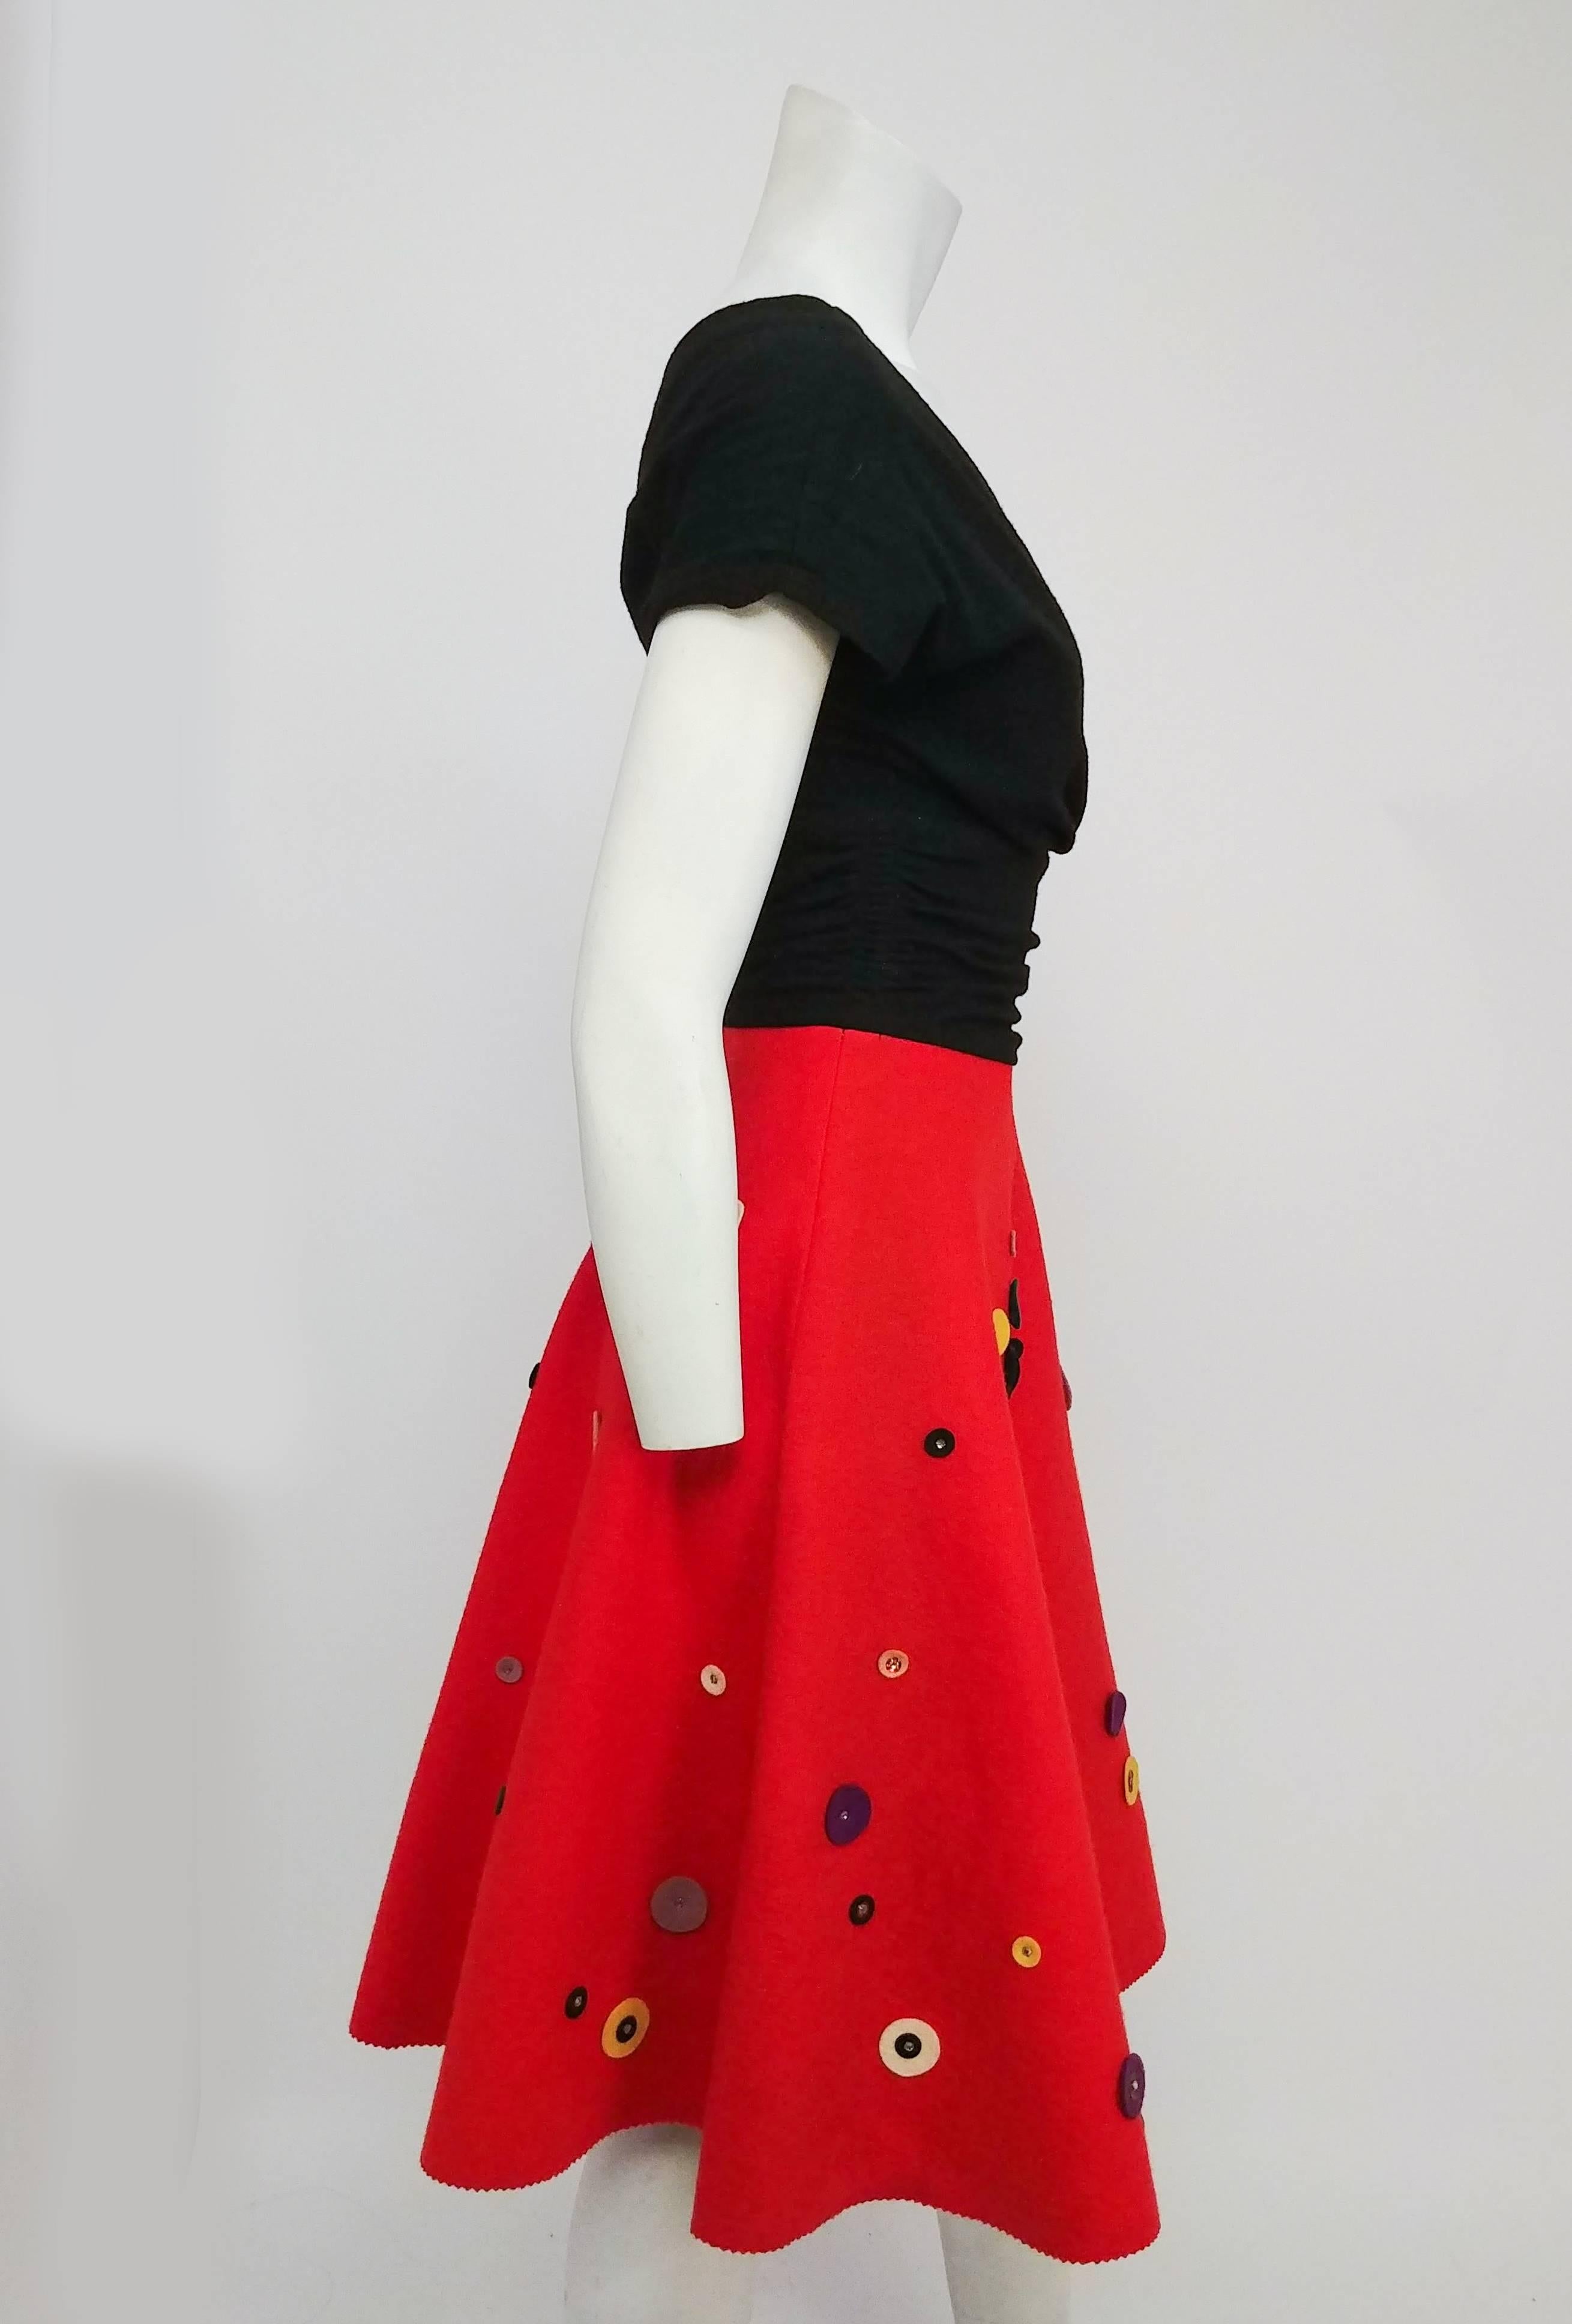 1950s a line dress